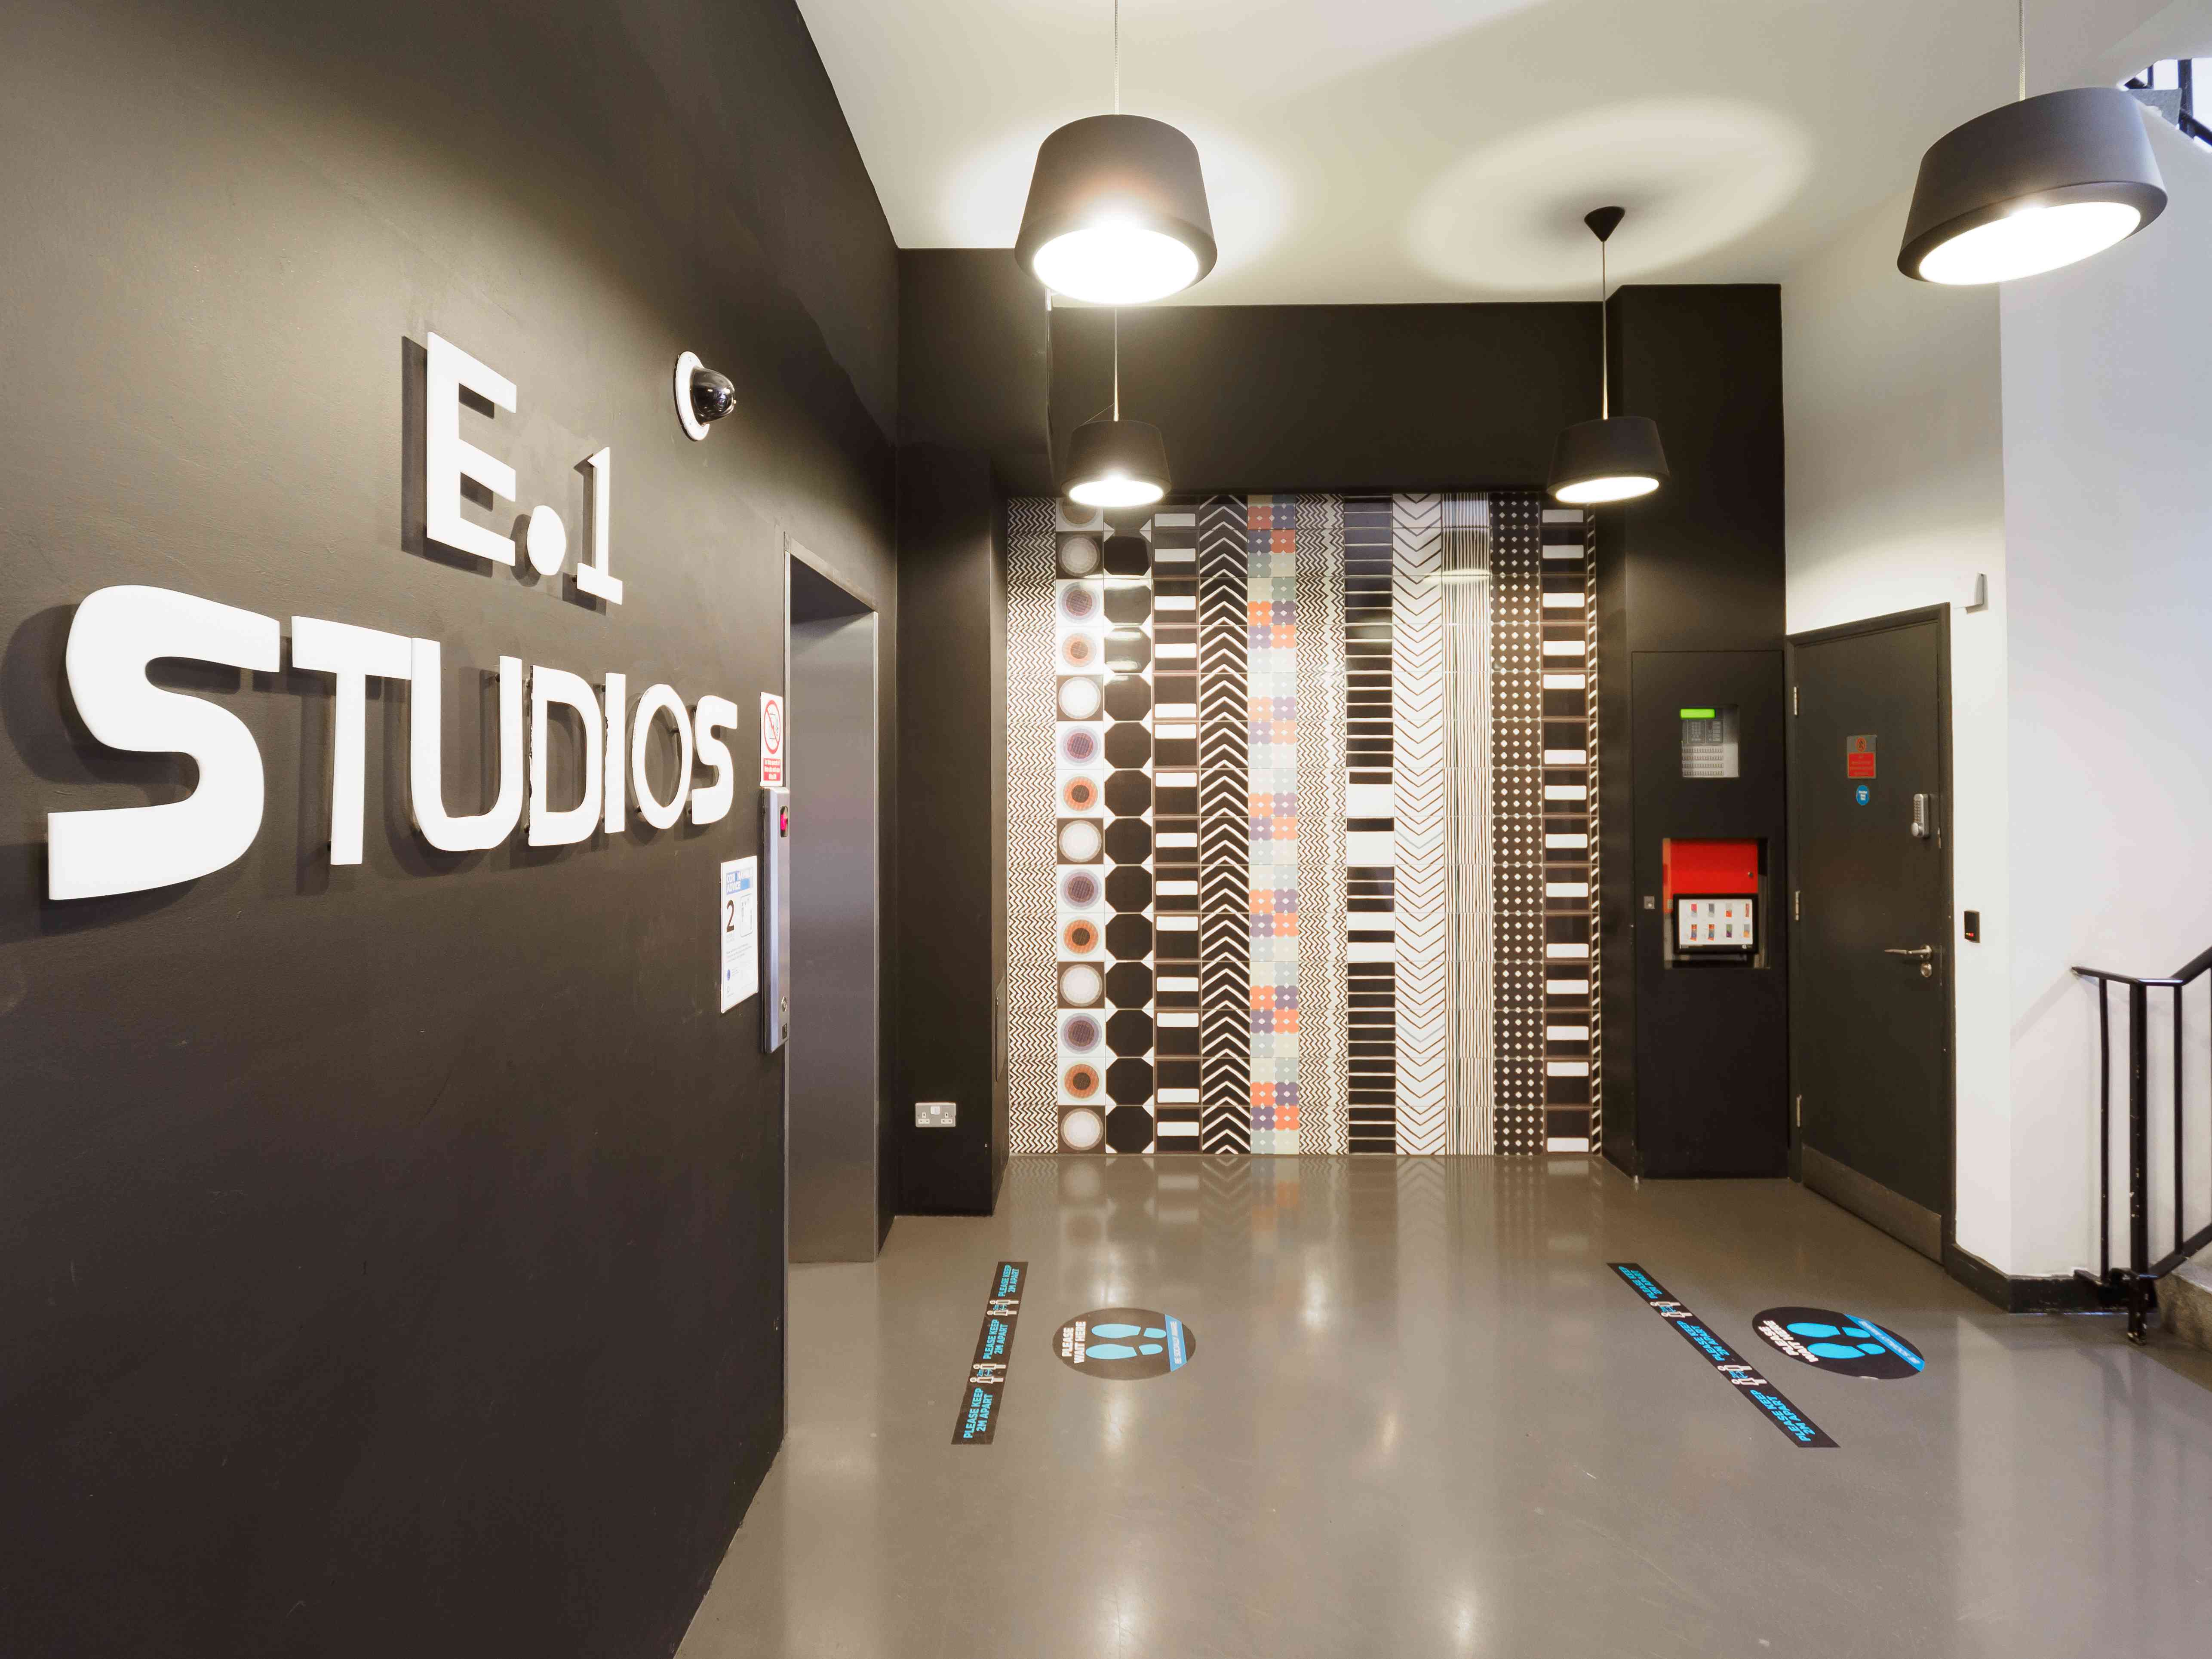 Images Workspace® | E1 Studios